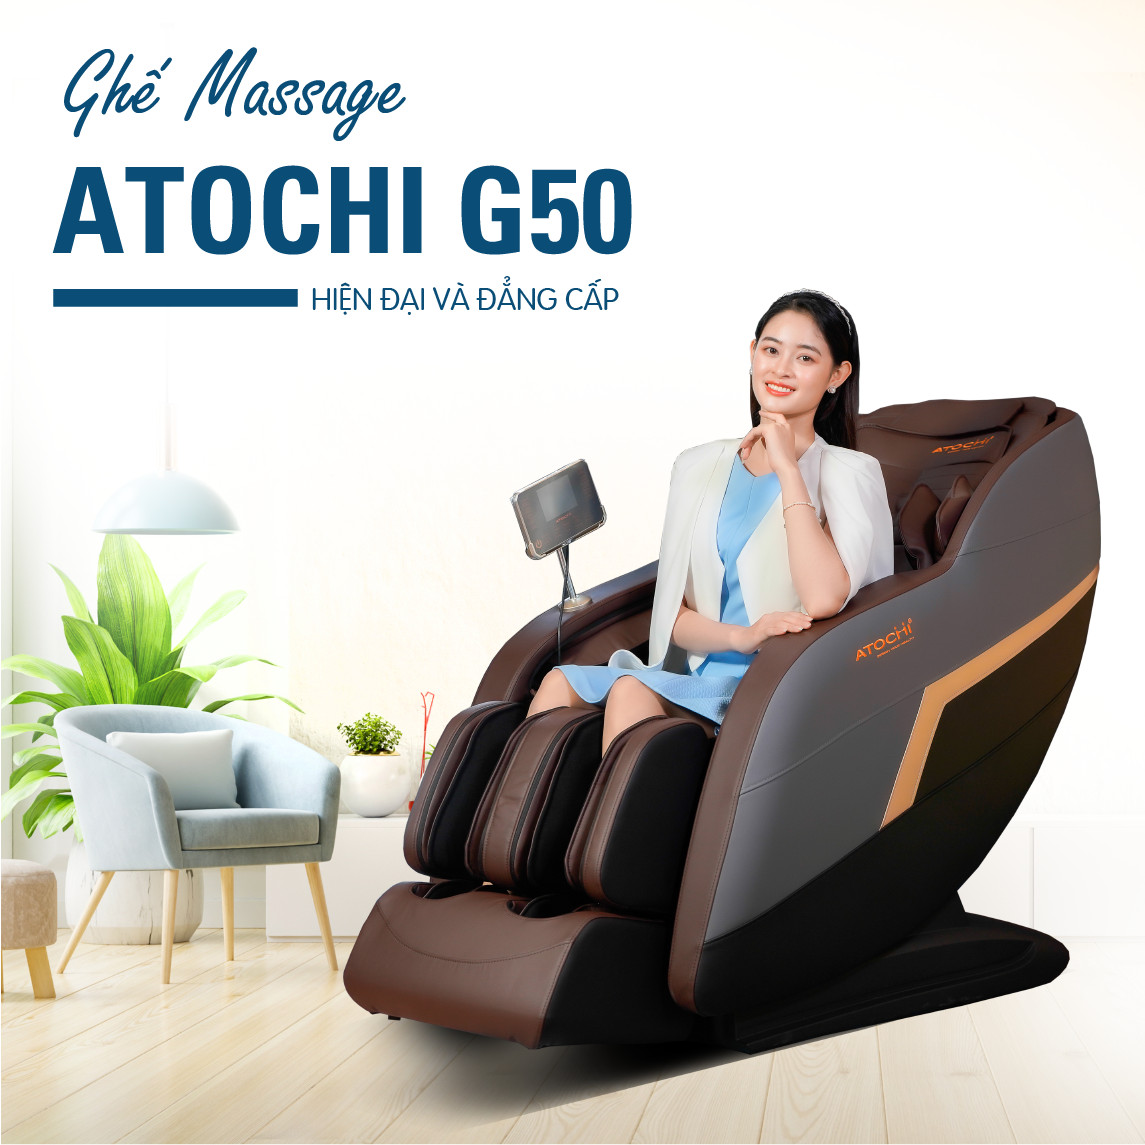 Tăng trải nghiệm với ghế massage Atochi G50